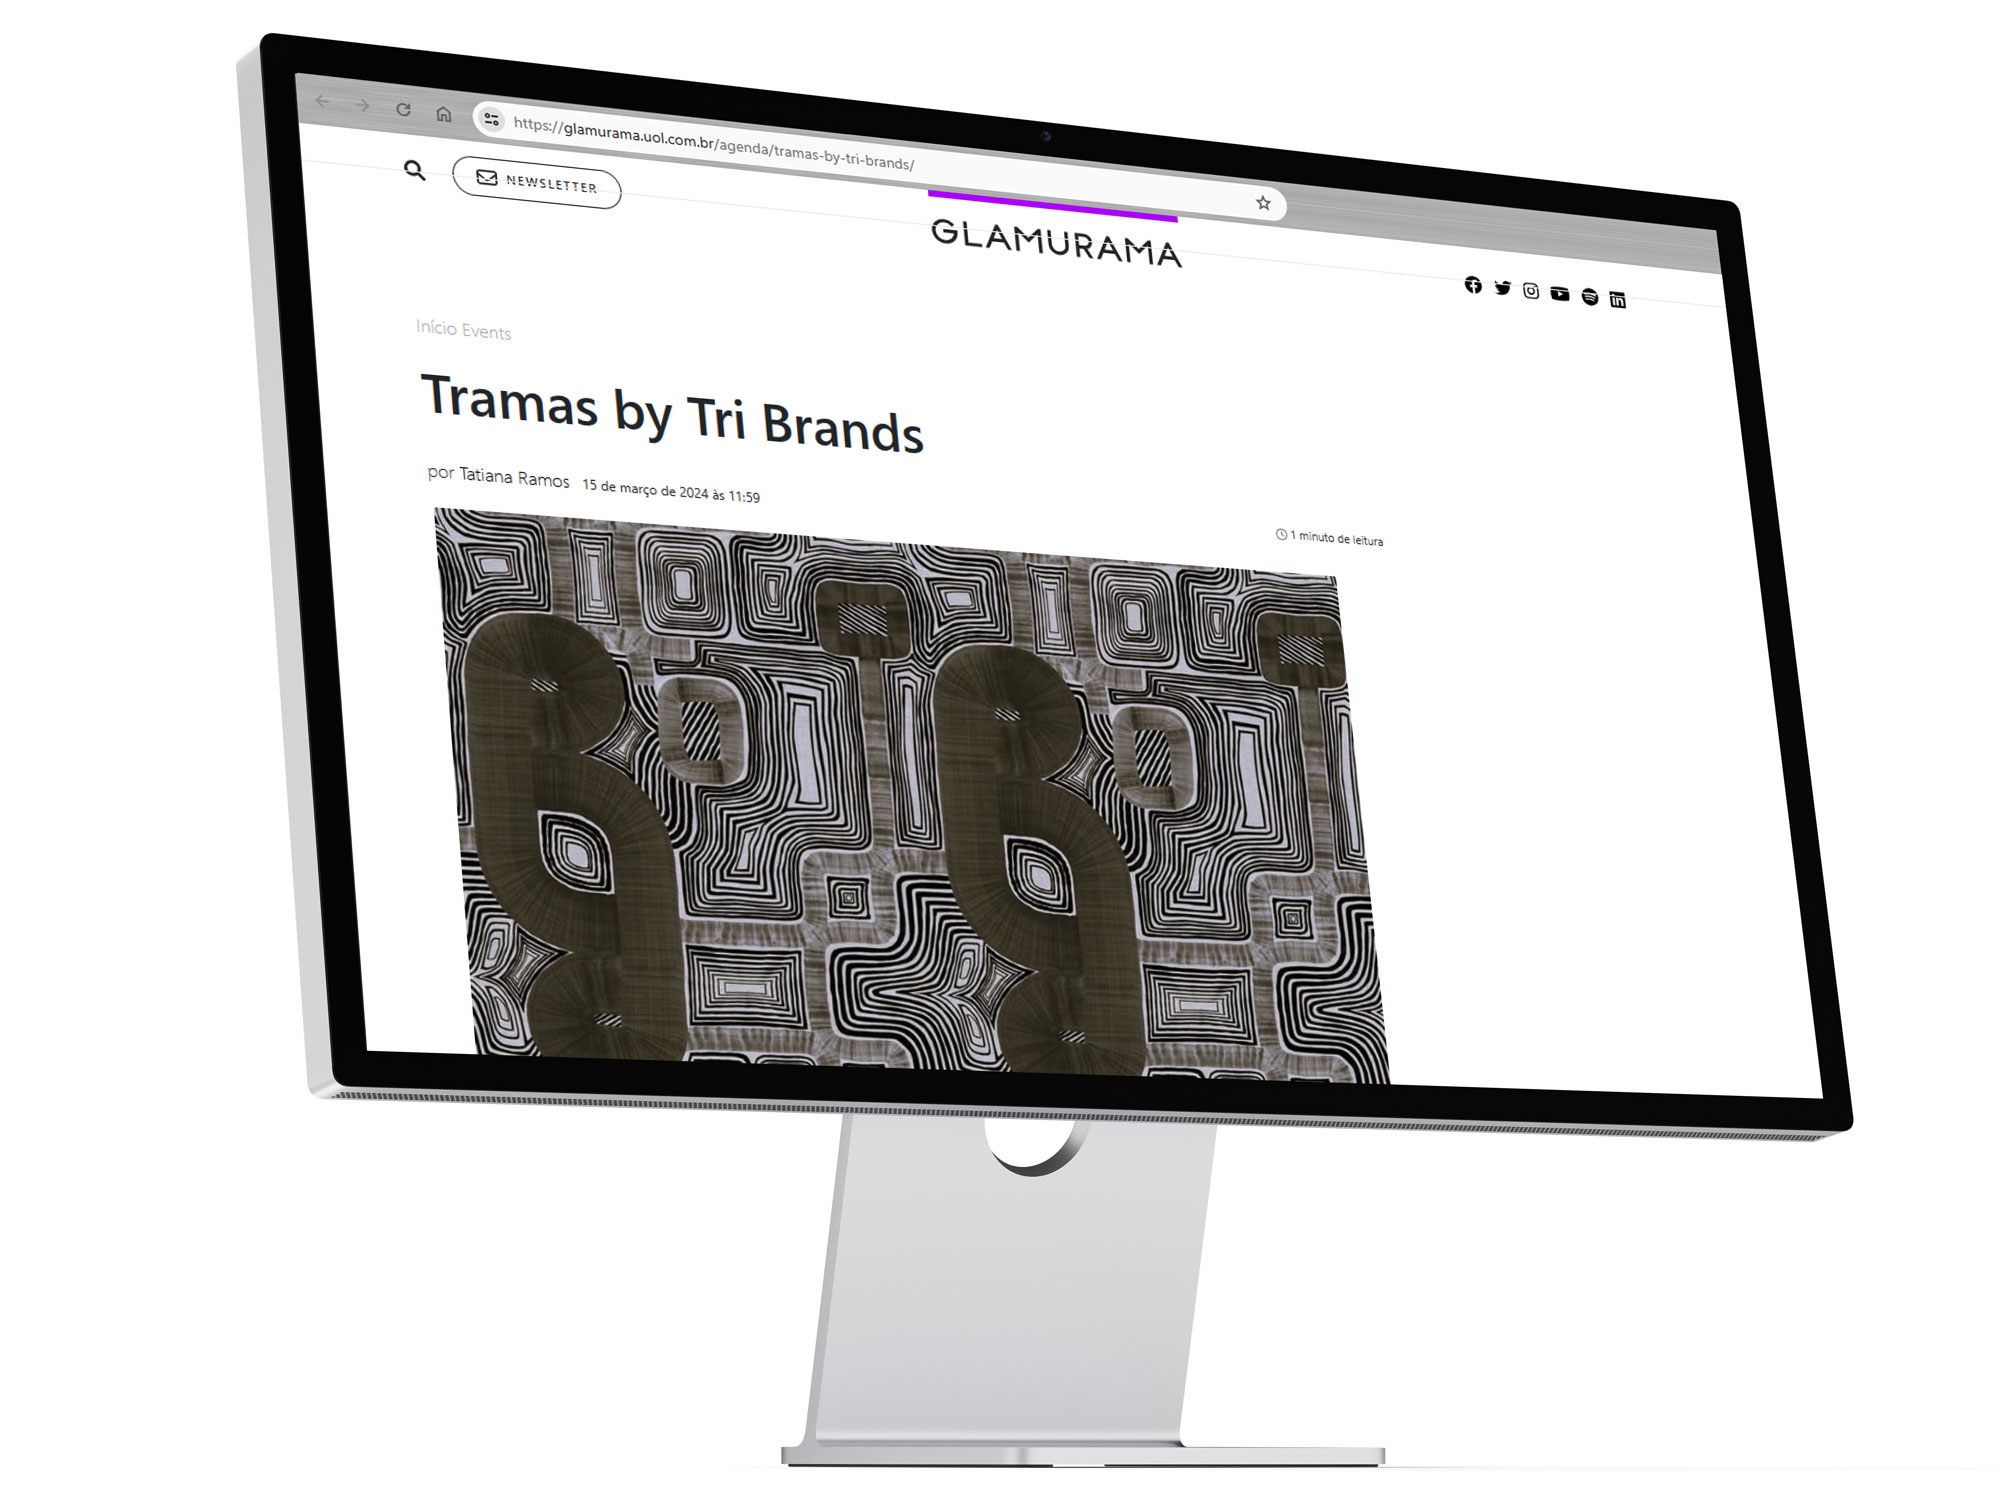 Tela de computador mostrando site Glamurama com uma matéria dos tecidos revendidos pela ByTriBrands.